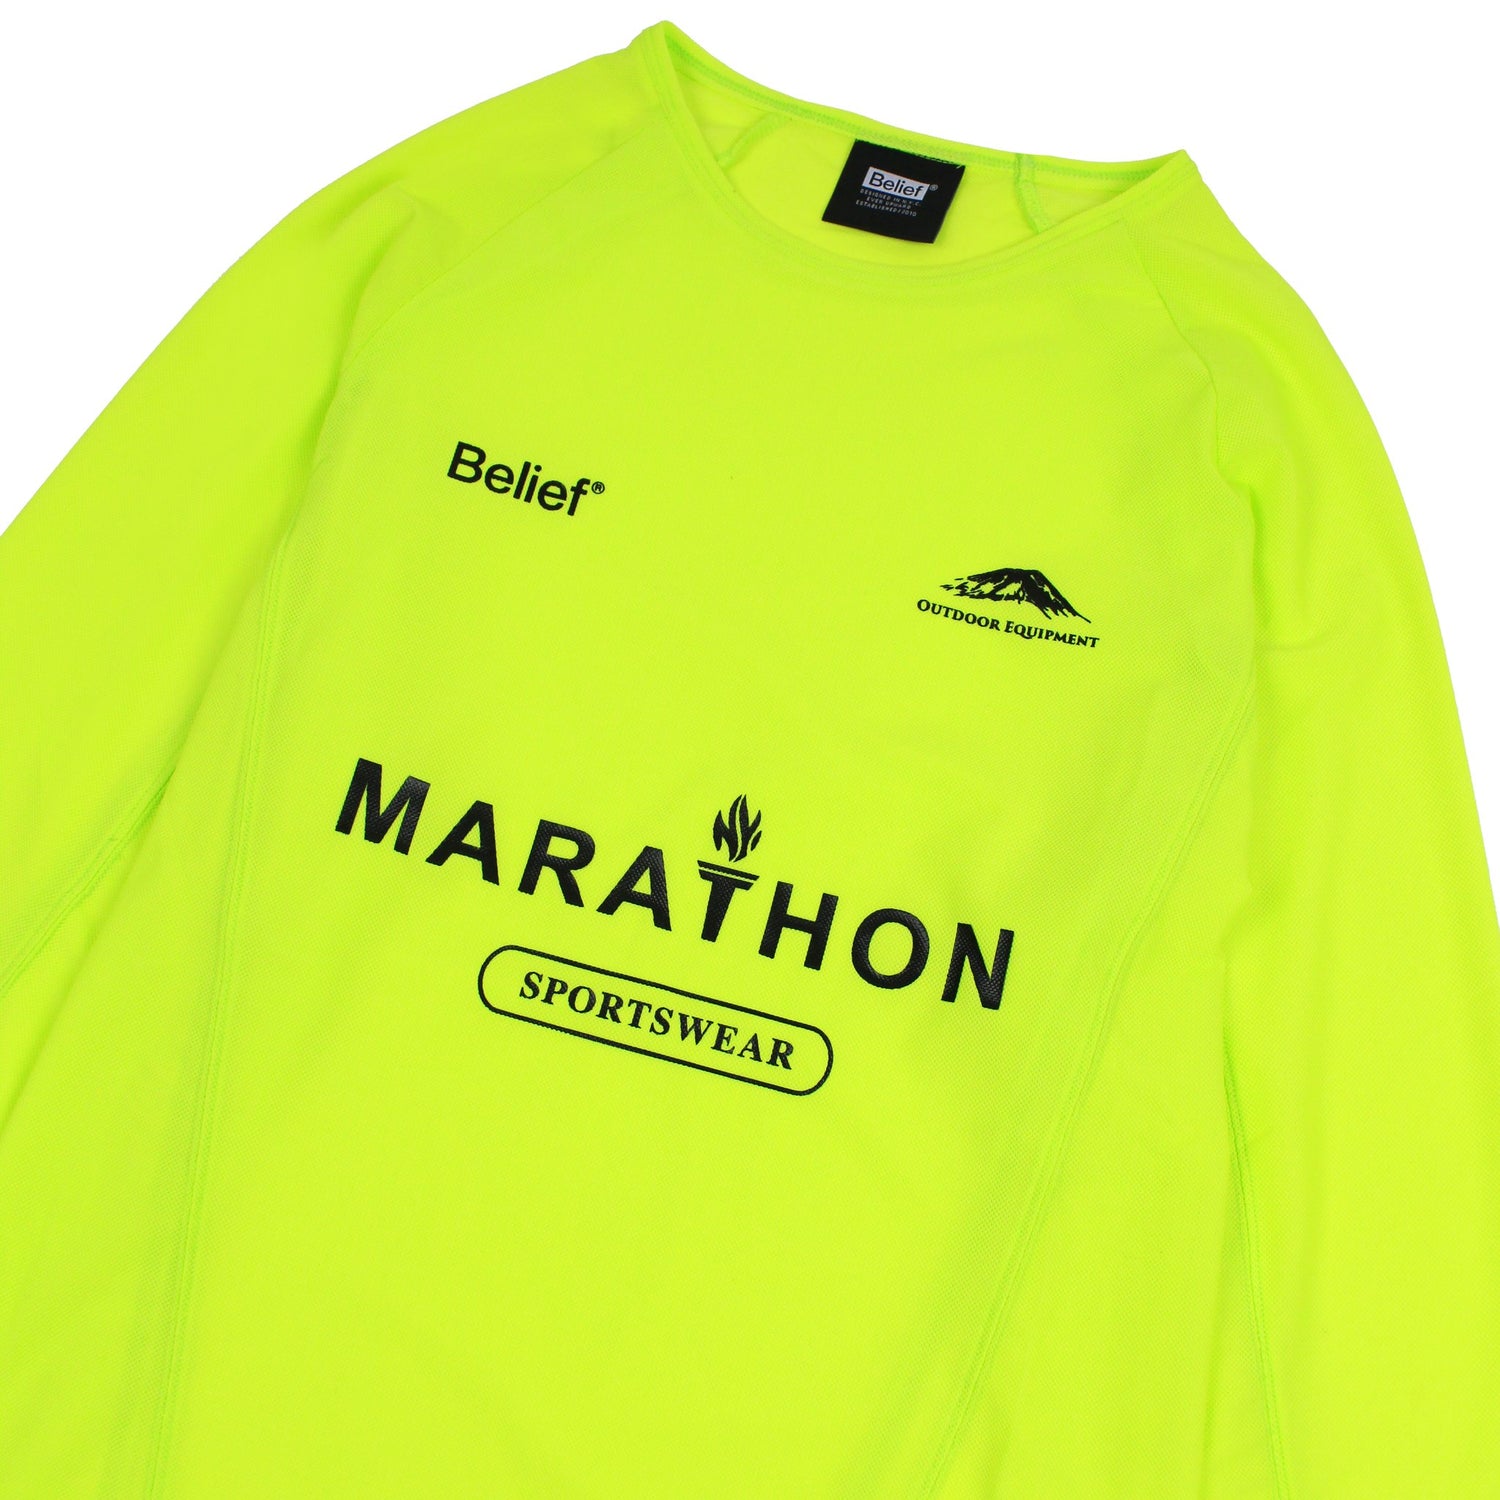 Belief NYC Marathon Mesh Jersey - Safety Yellow